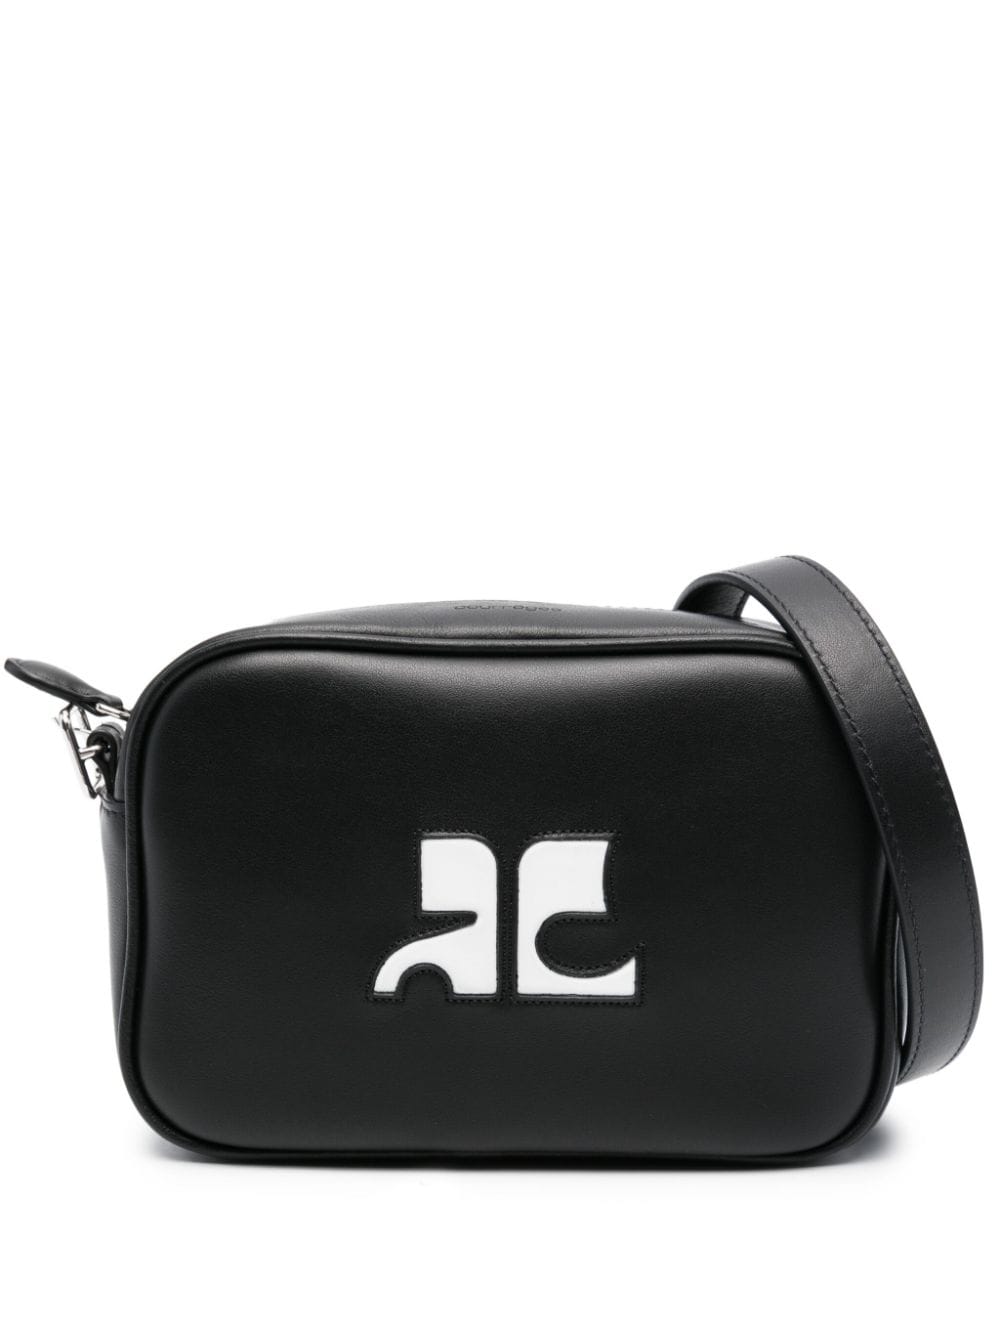 Courrèges COURRÈGES- Iconic Leather Camera Bag